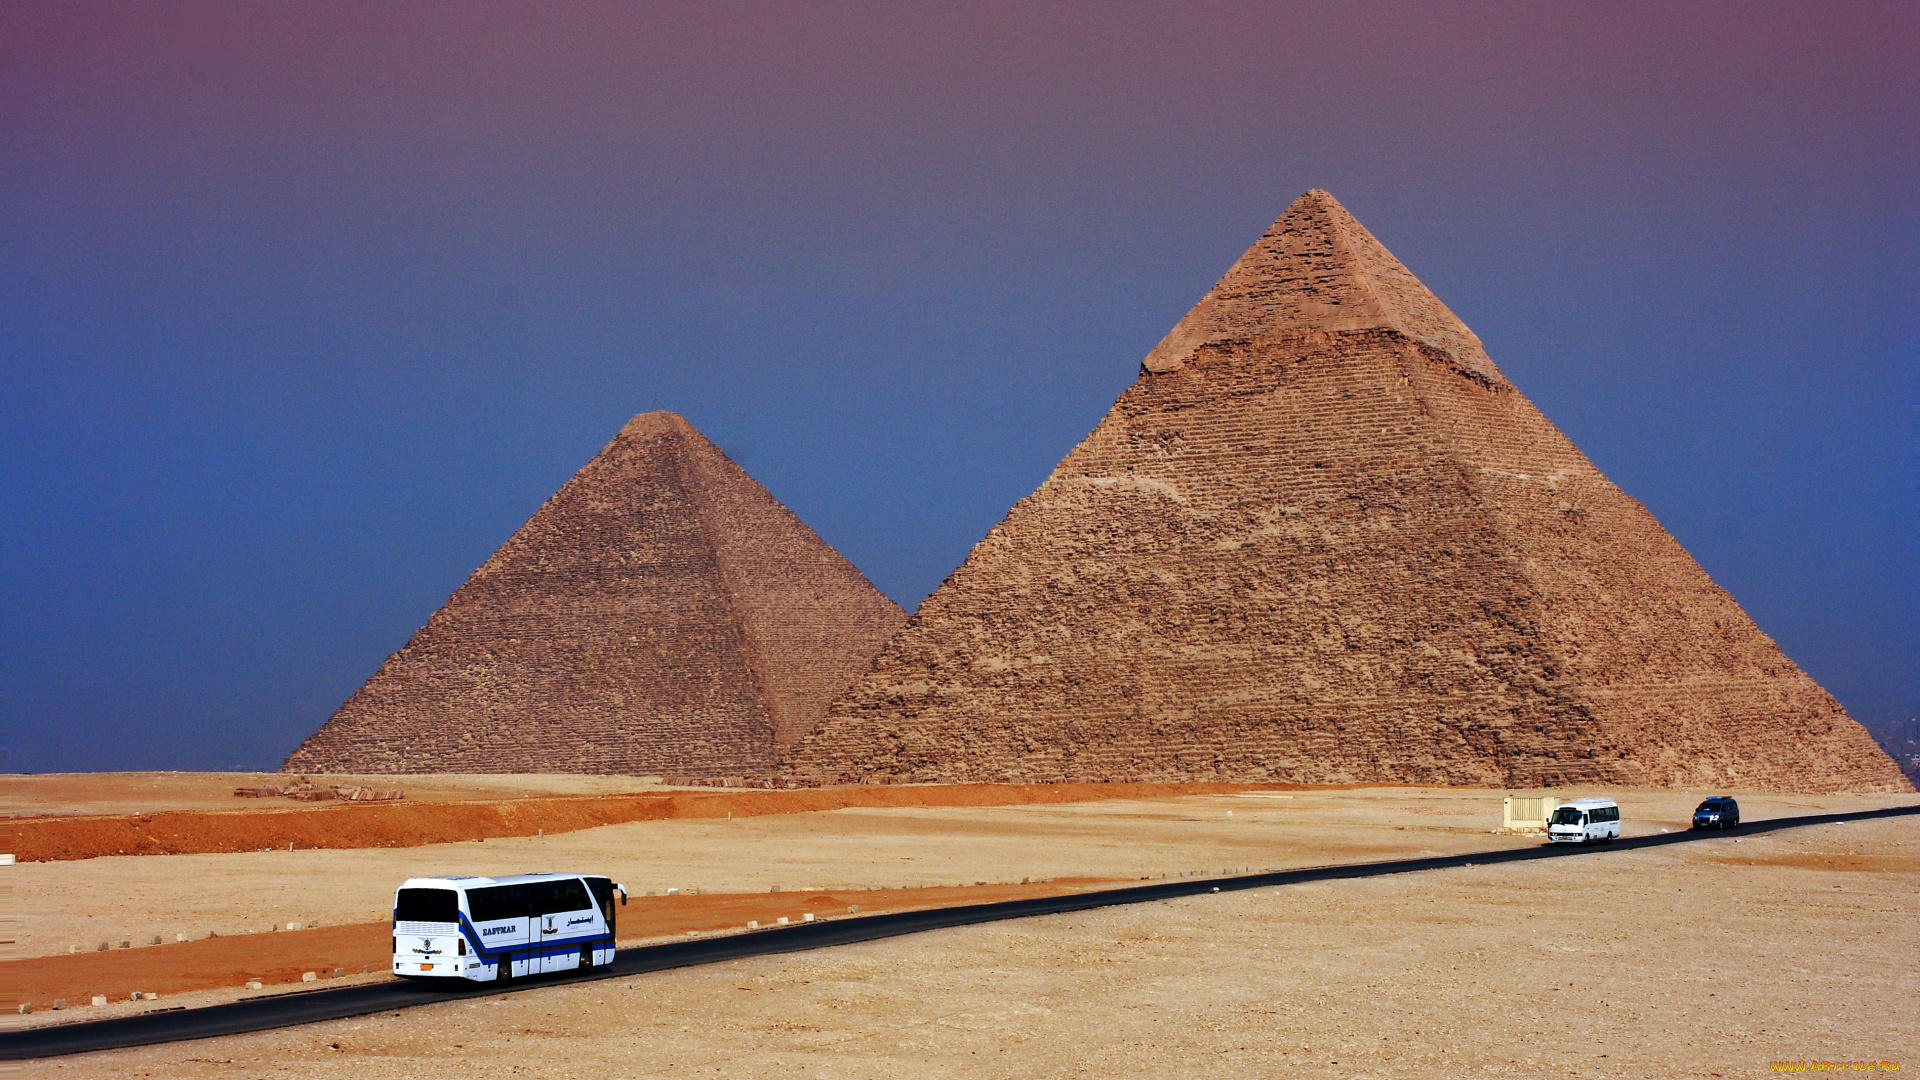 pyramids, busstreet, города, исторические, архитектурные, памятники, путешествие, автобусы, пирамиды